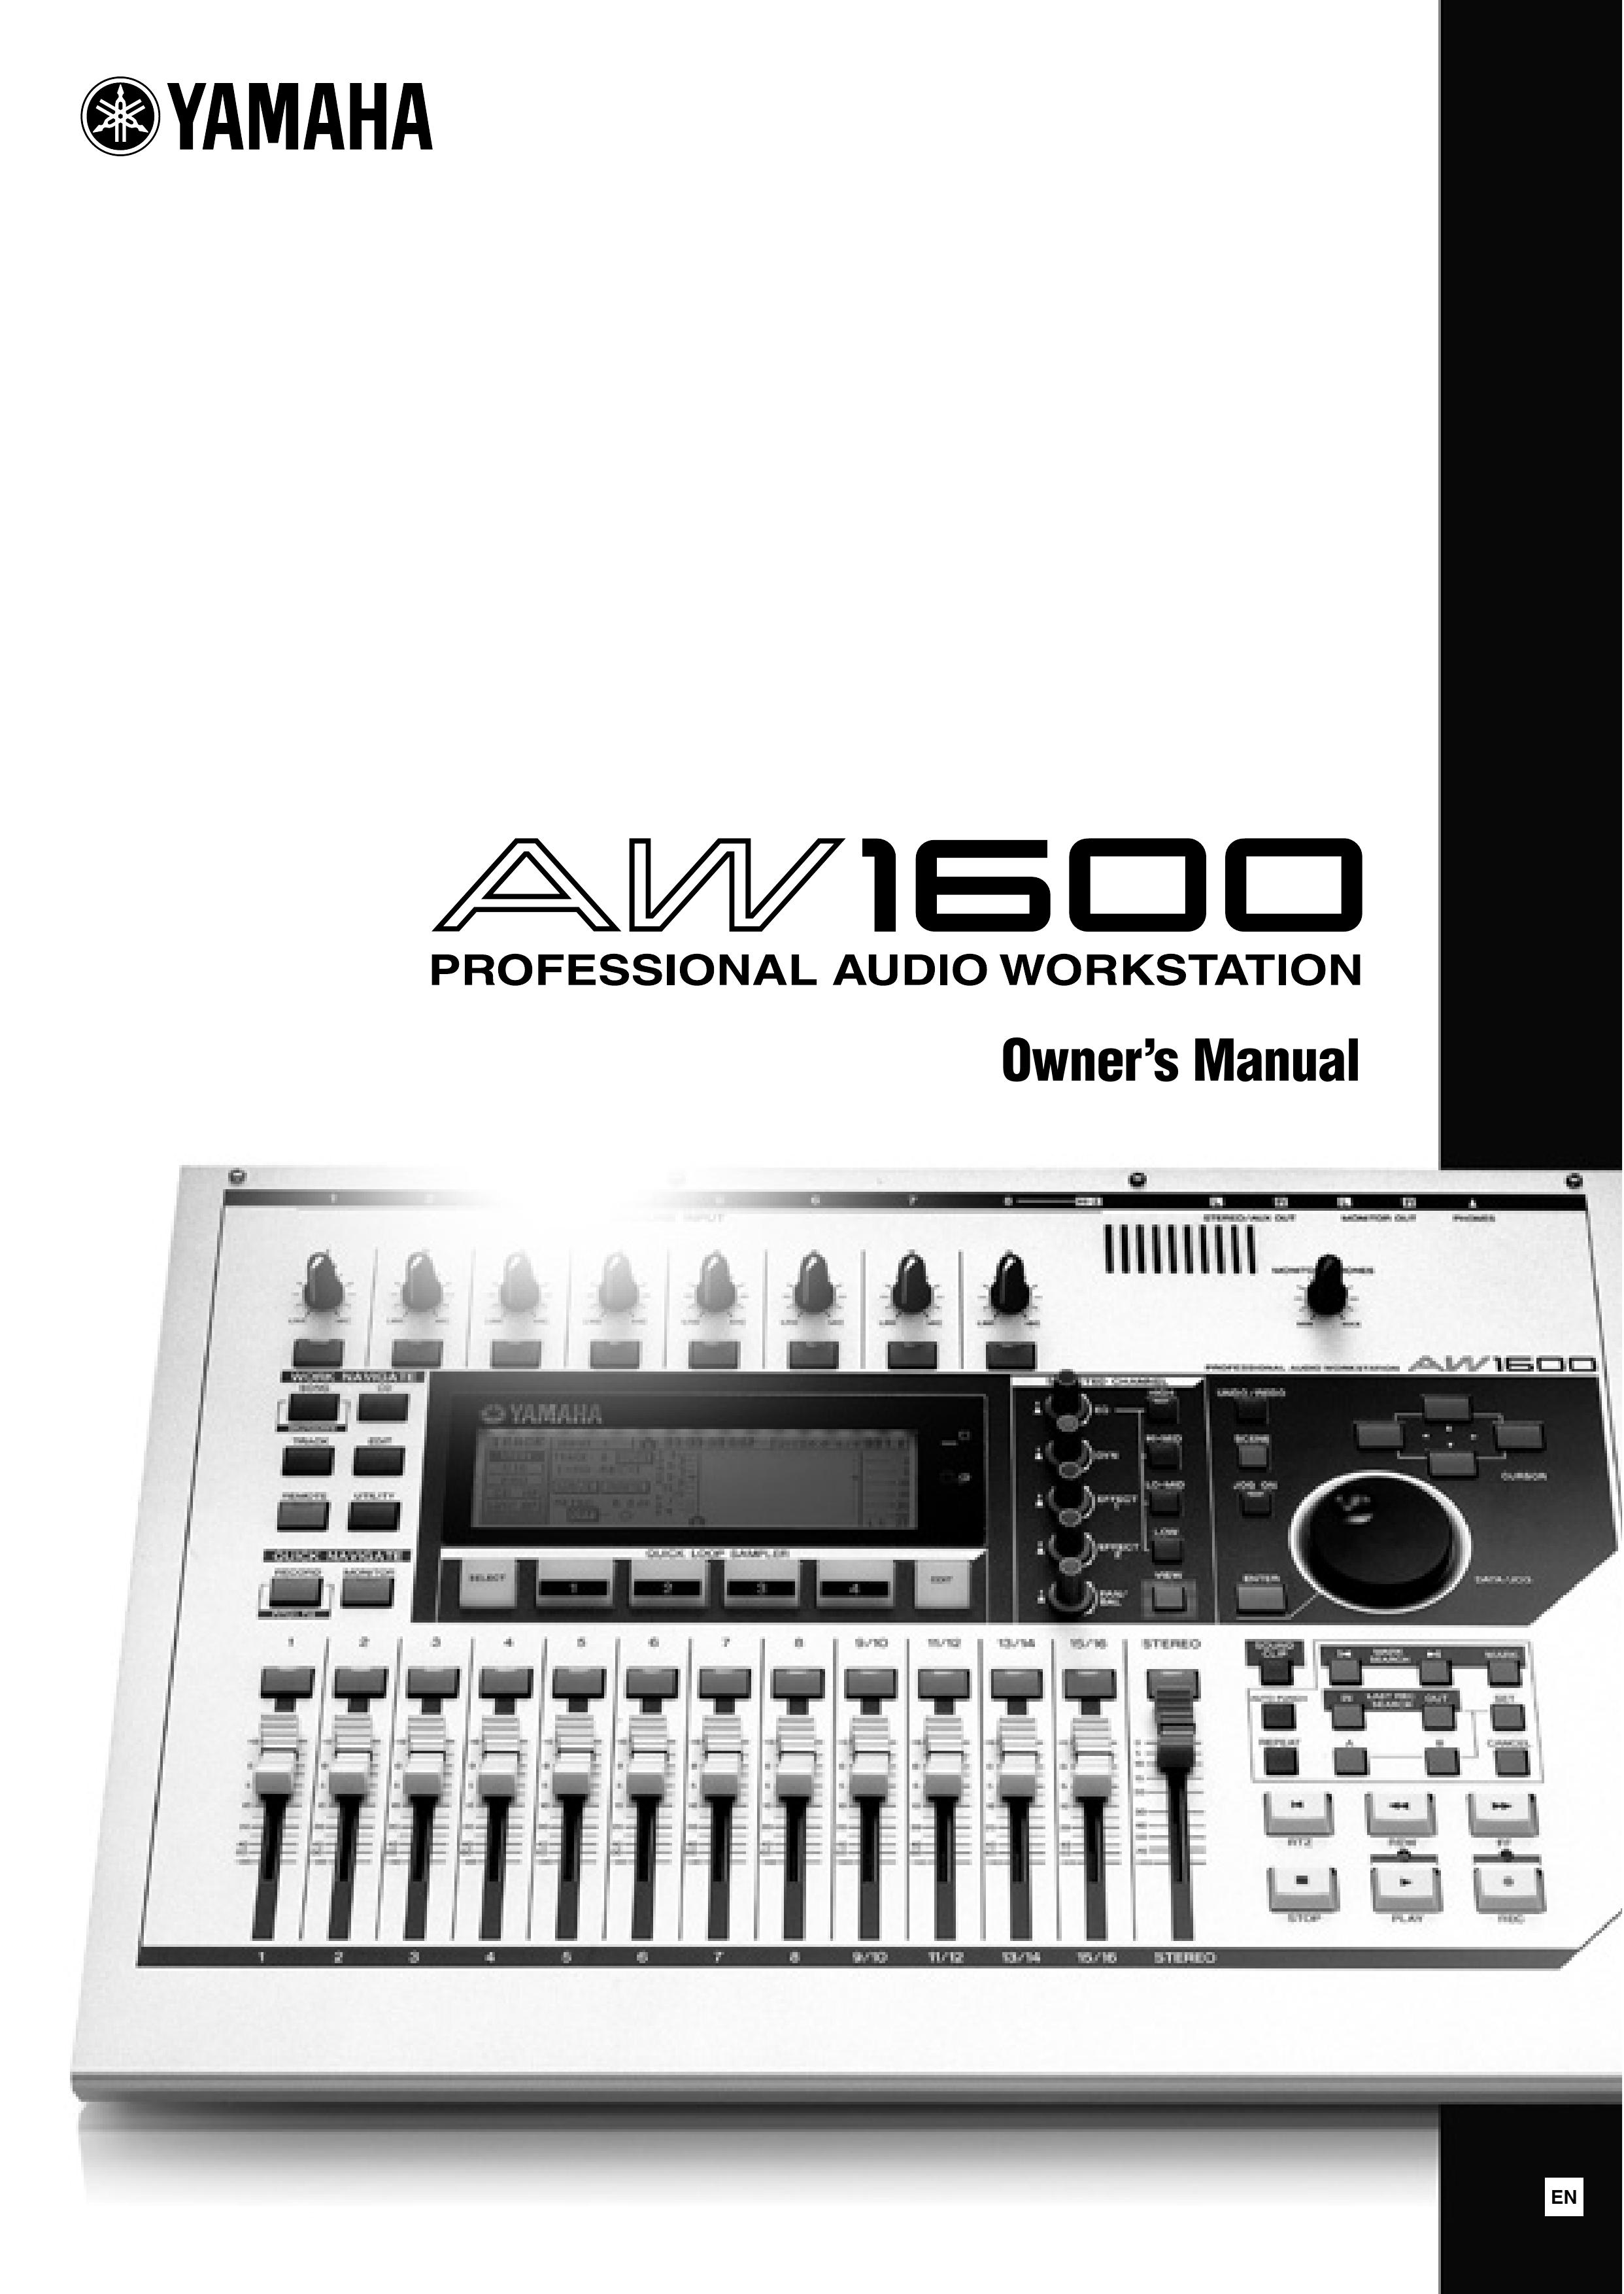 Yamaha AW 1600 Musical Instrument User Manual